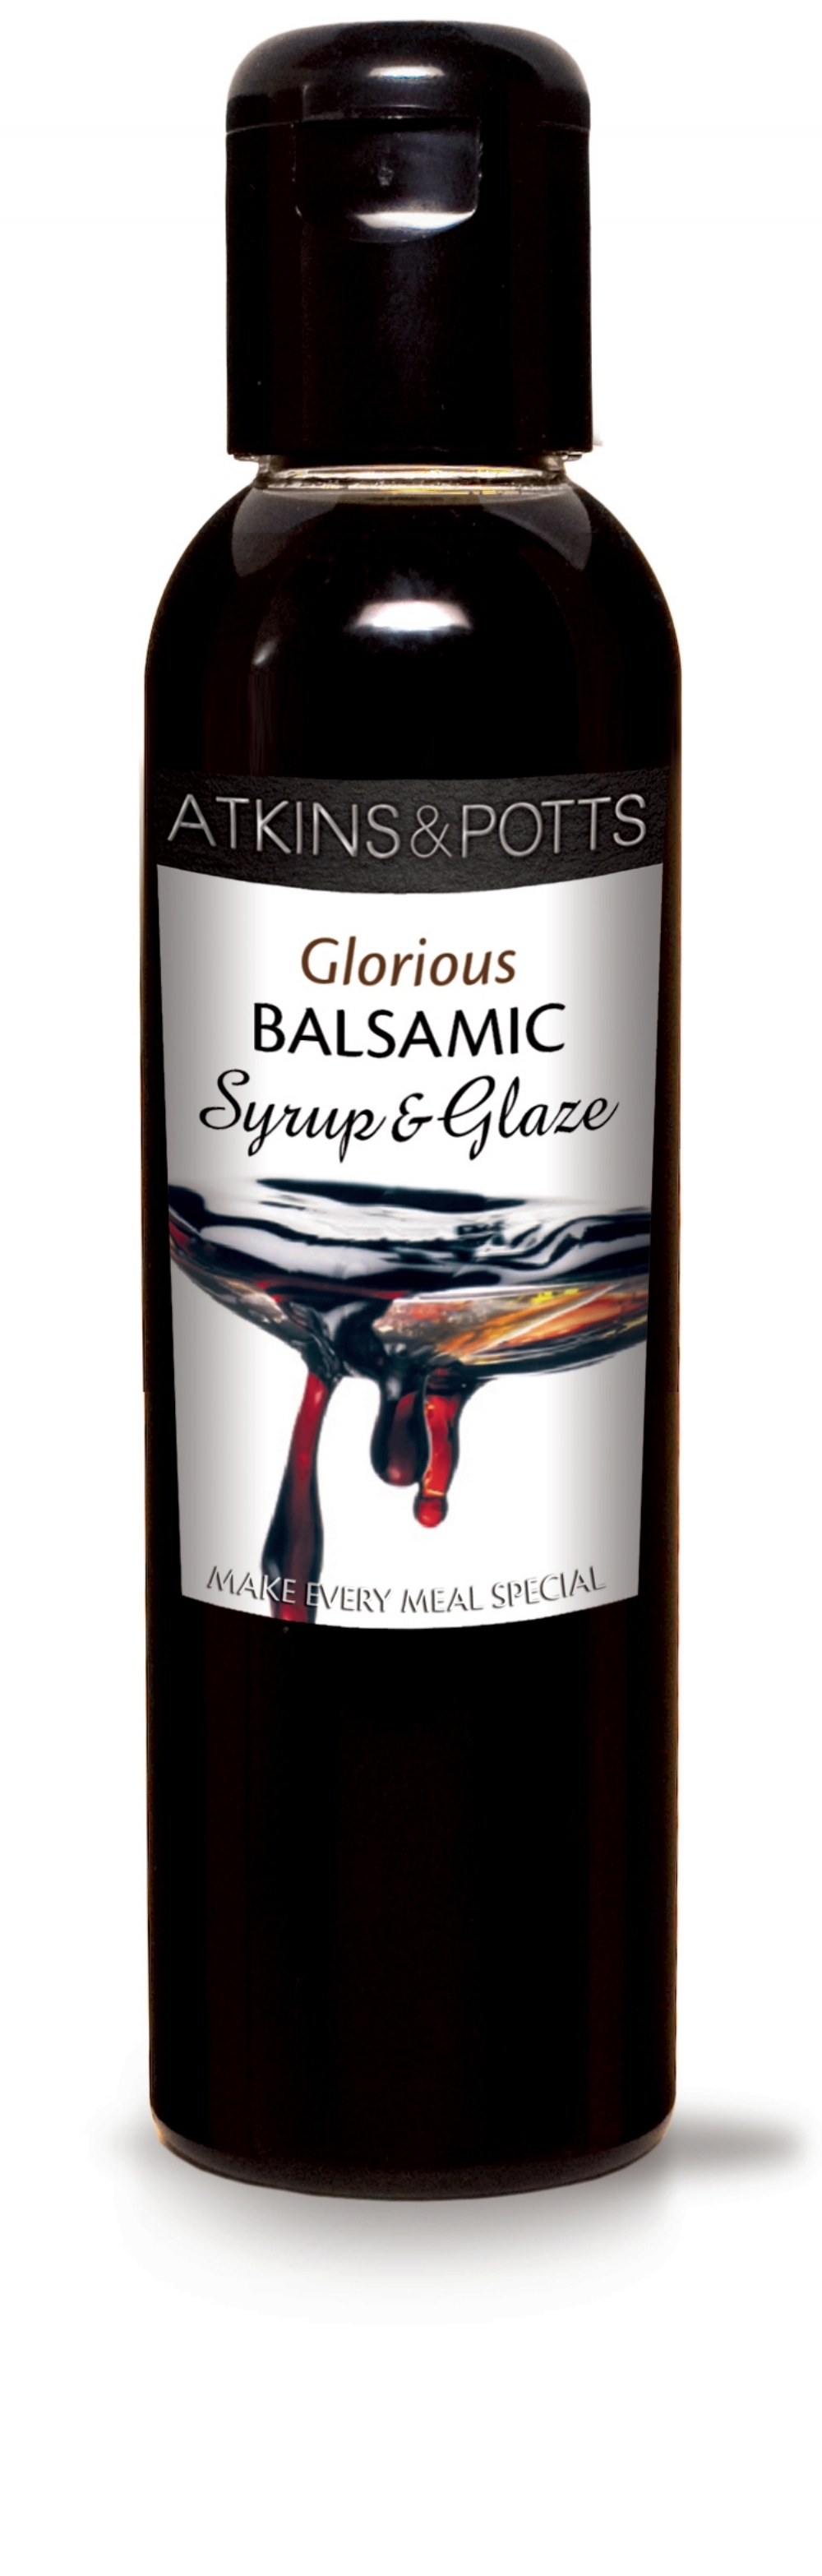 ATKINS & POTTS Balsamic Syrup and Glaze 200g